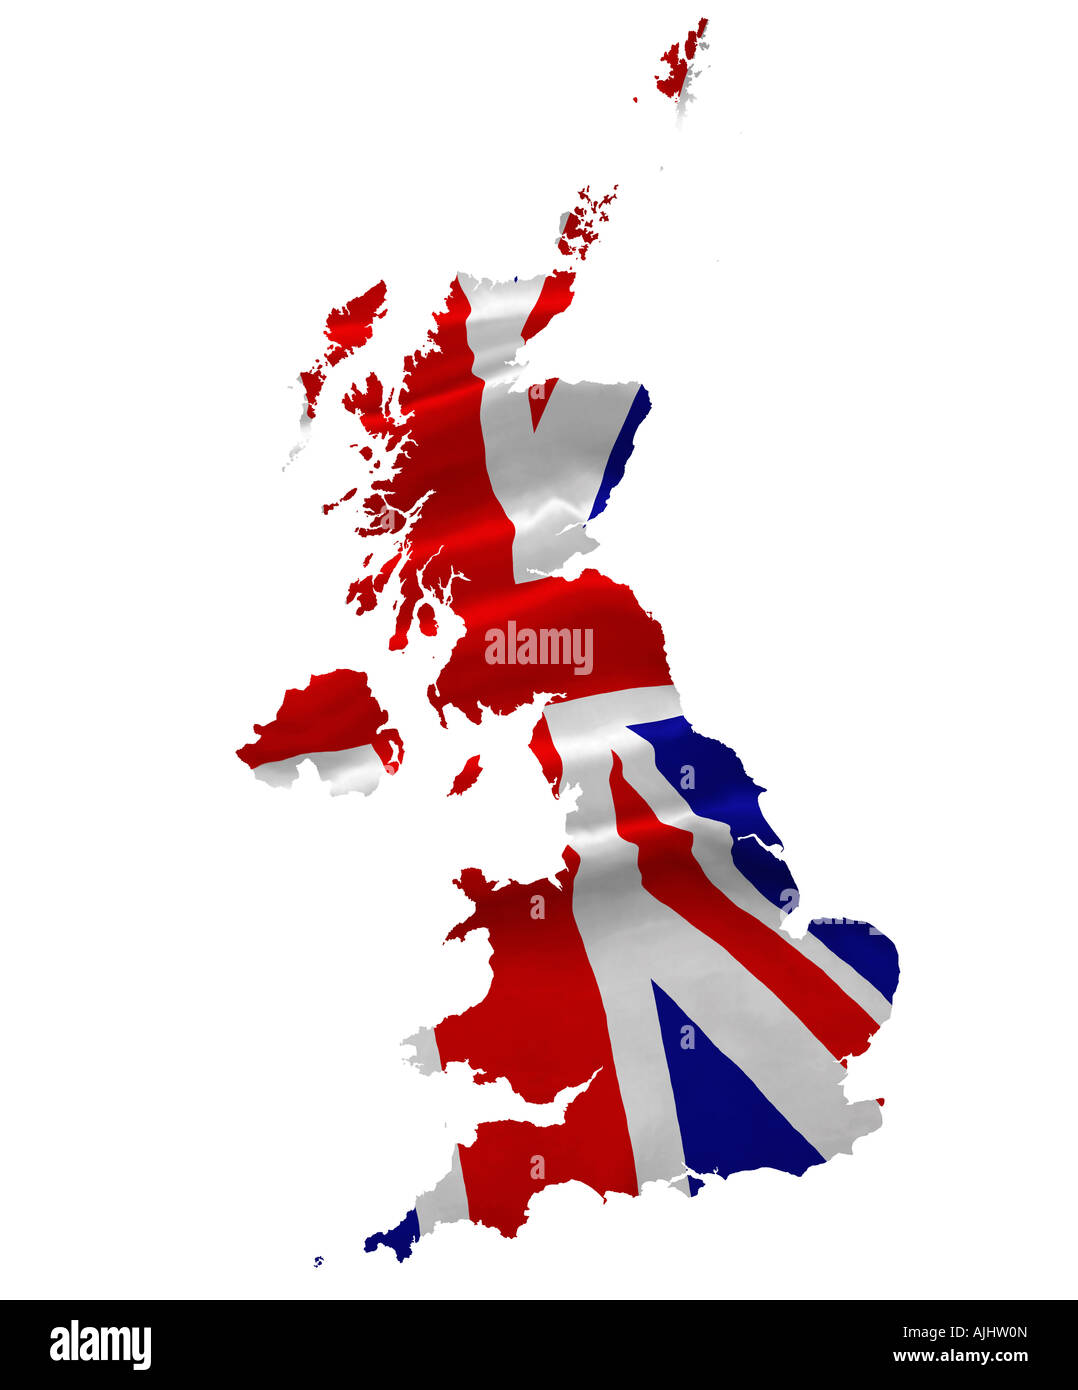 Vereinigtes Königreich-Karte und Union Jack-Flagge-Konzept. Nationalflagge des Vereinigten Königreichs Stockfoto